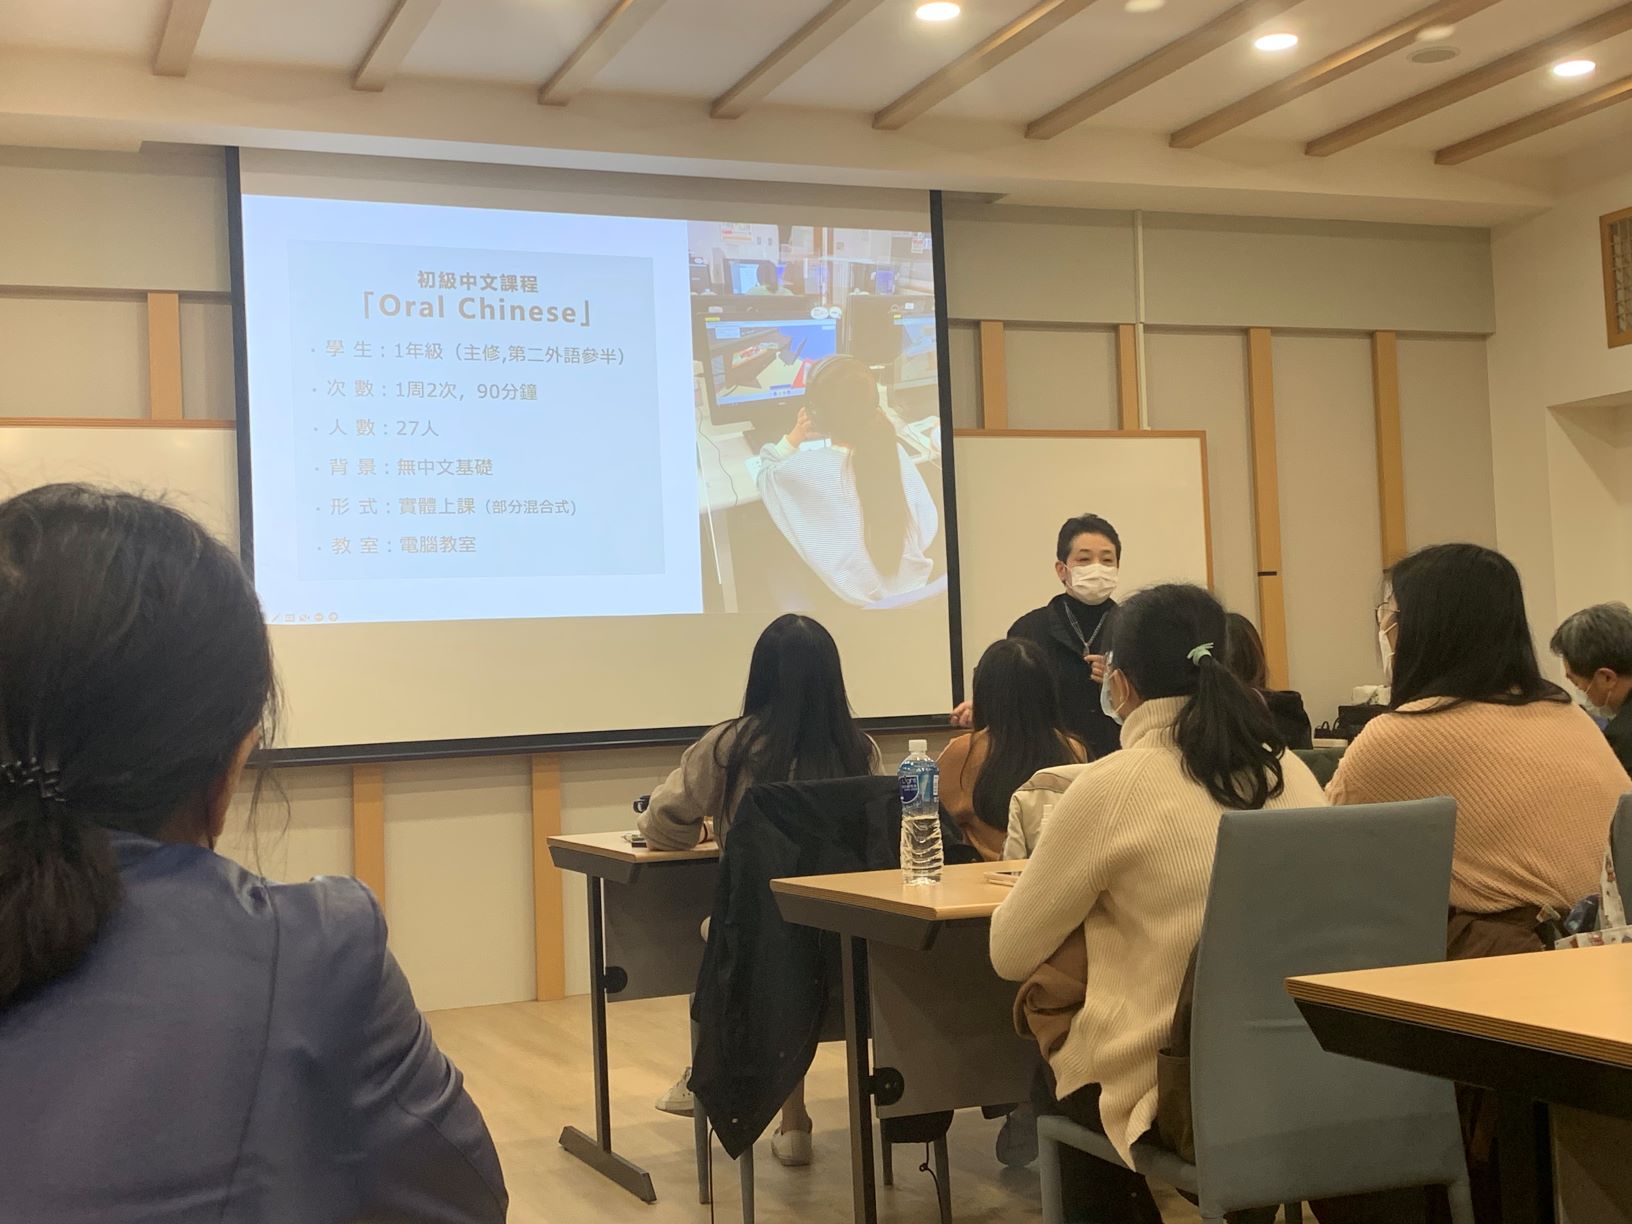 渡邉ゆきこ教授「音声認識機能を使った発音練習ソフトとVRを活用した外国語教育」をテーマに台湾で講演